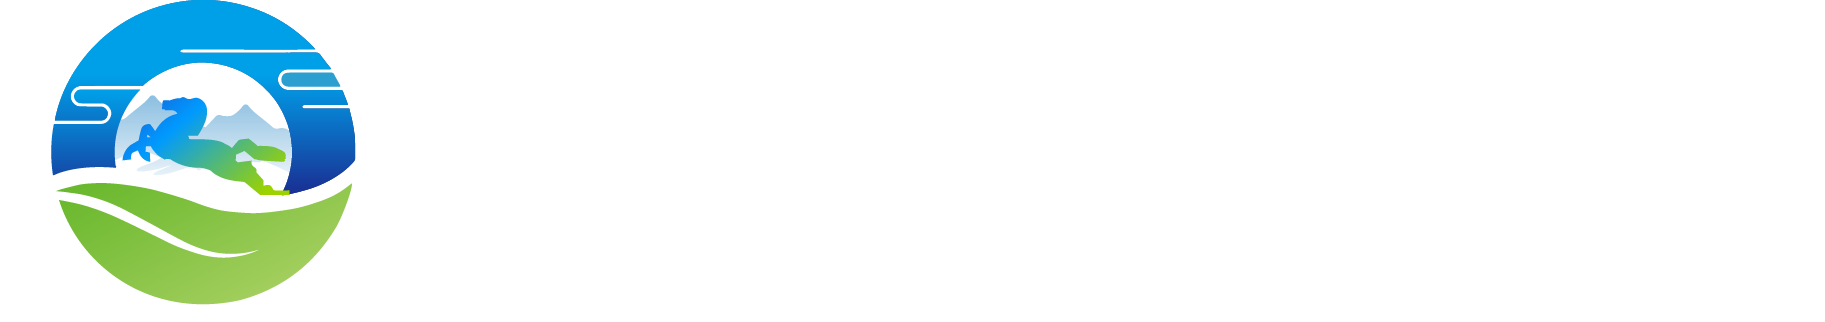 内蒙古新媒体协会